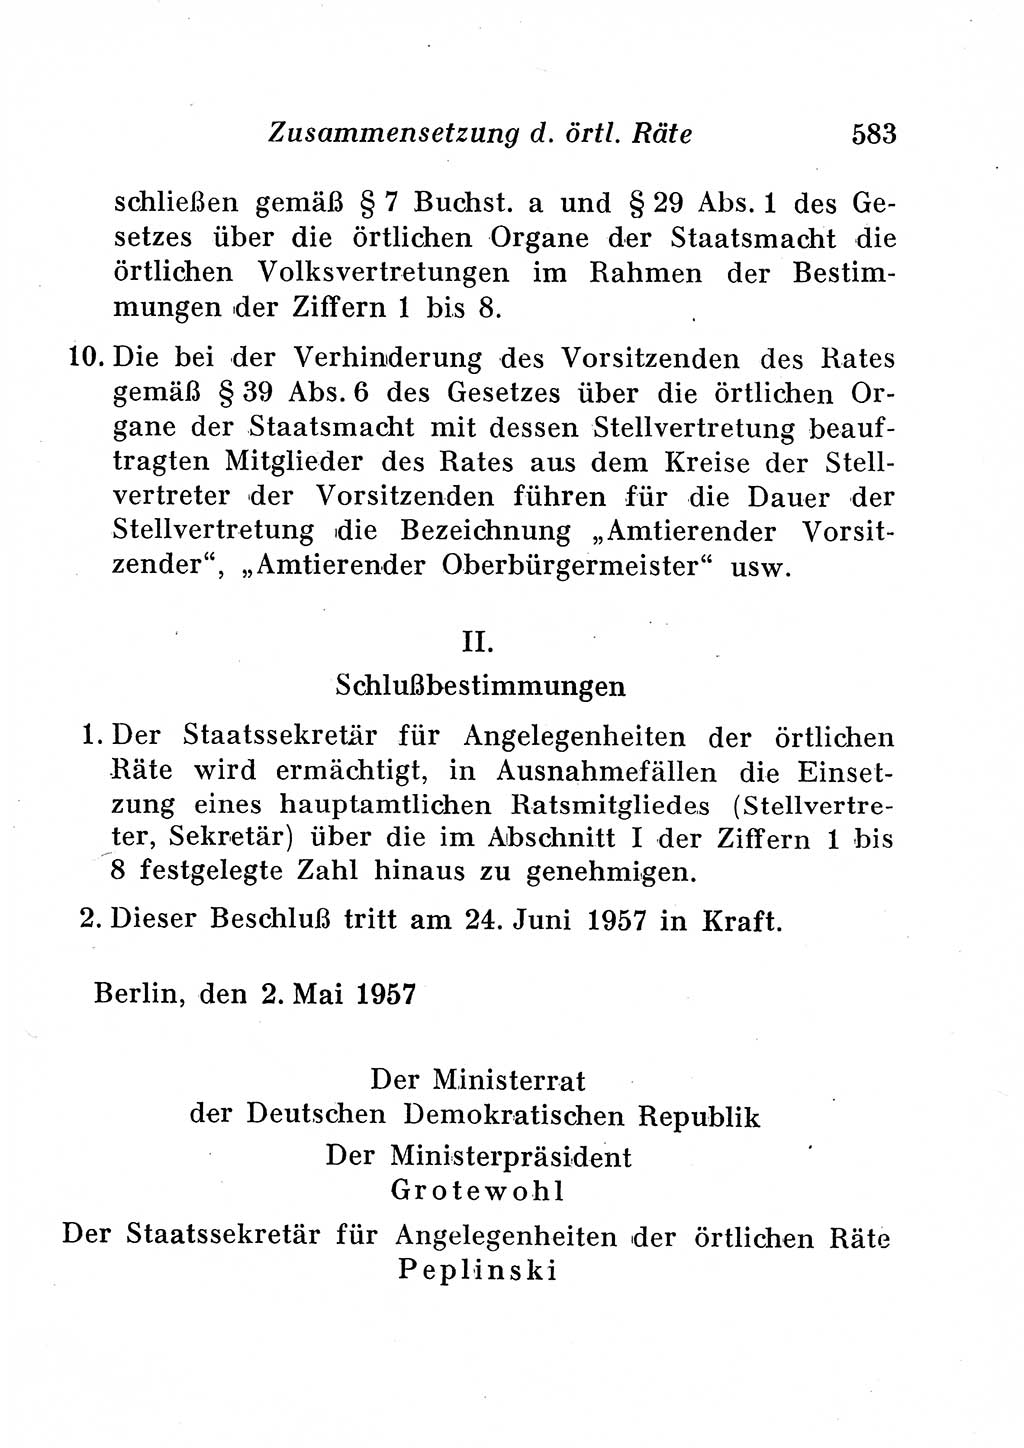 Staats- und verwaltungsrechtliche Gesetze der Deutschen Demokratischen Republik (DDR) 1958, Seite 583 (StVerwR Ges. DDR 1958, S. 583)